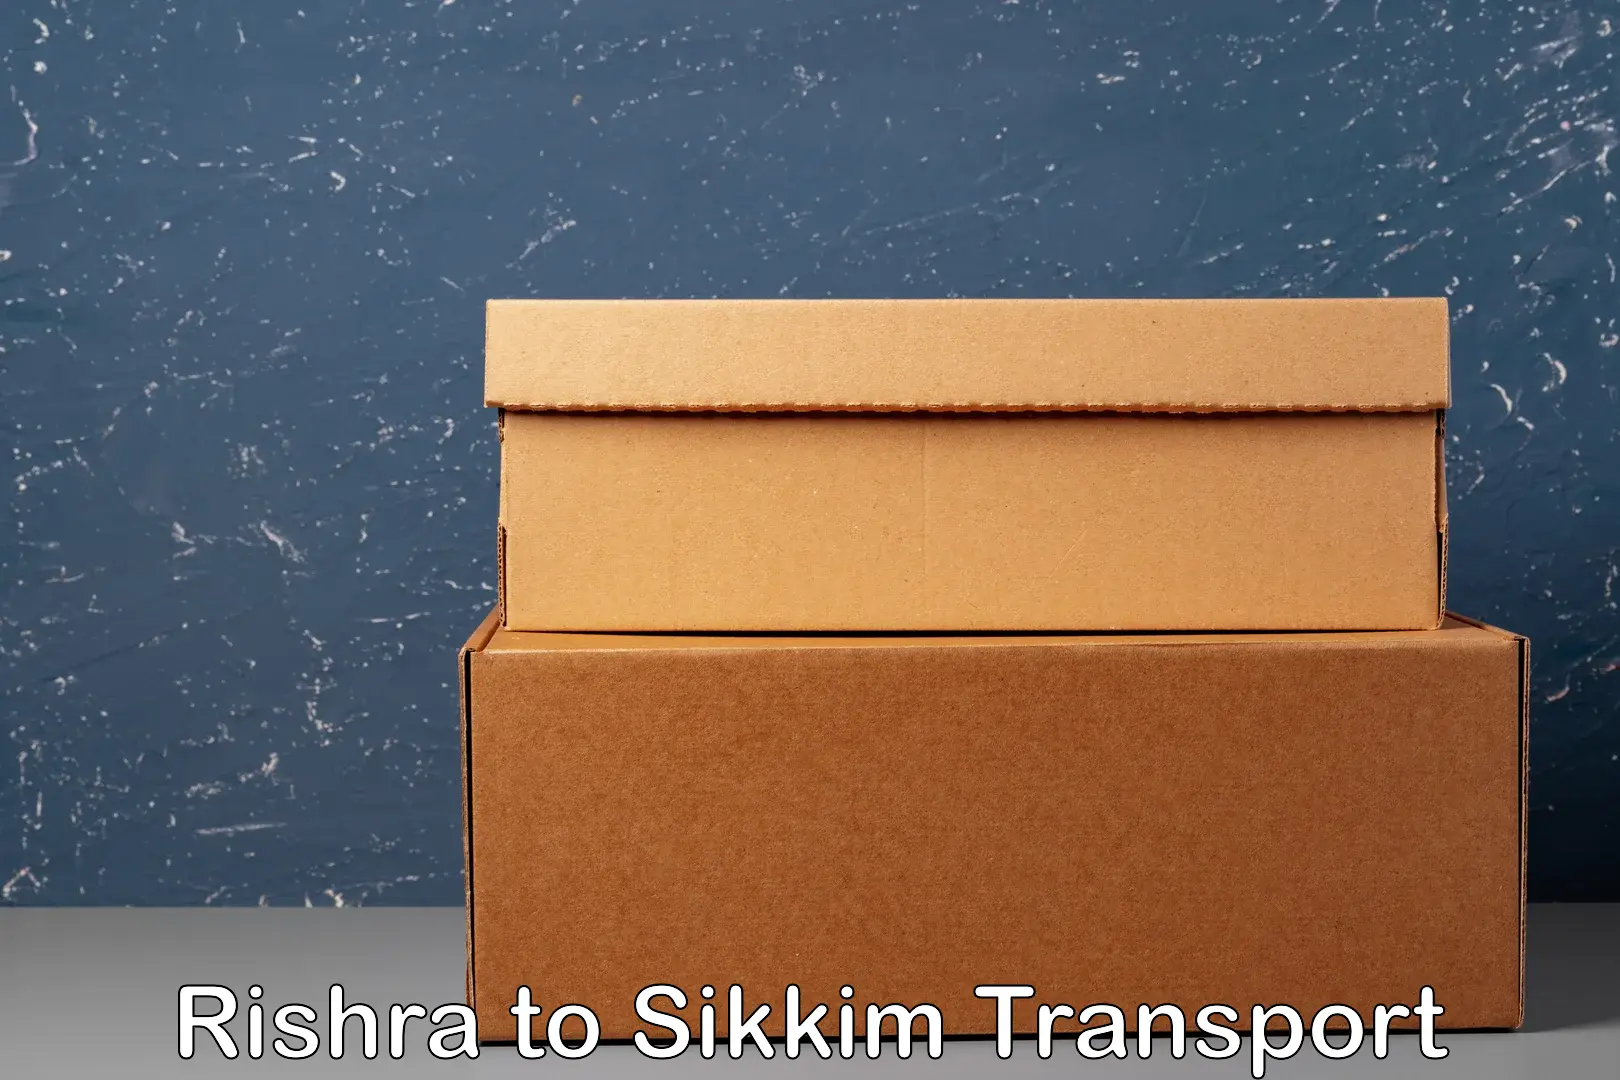 Bike transport service Rishra to North Sikkim